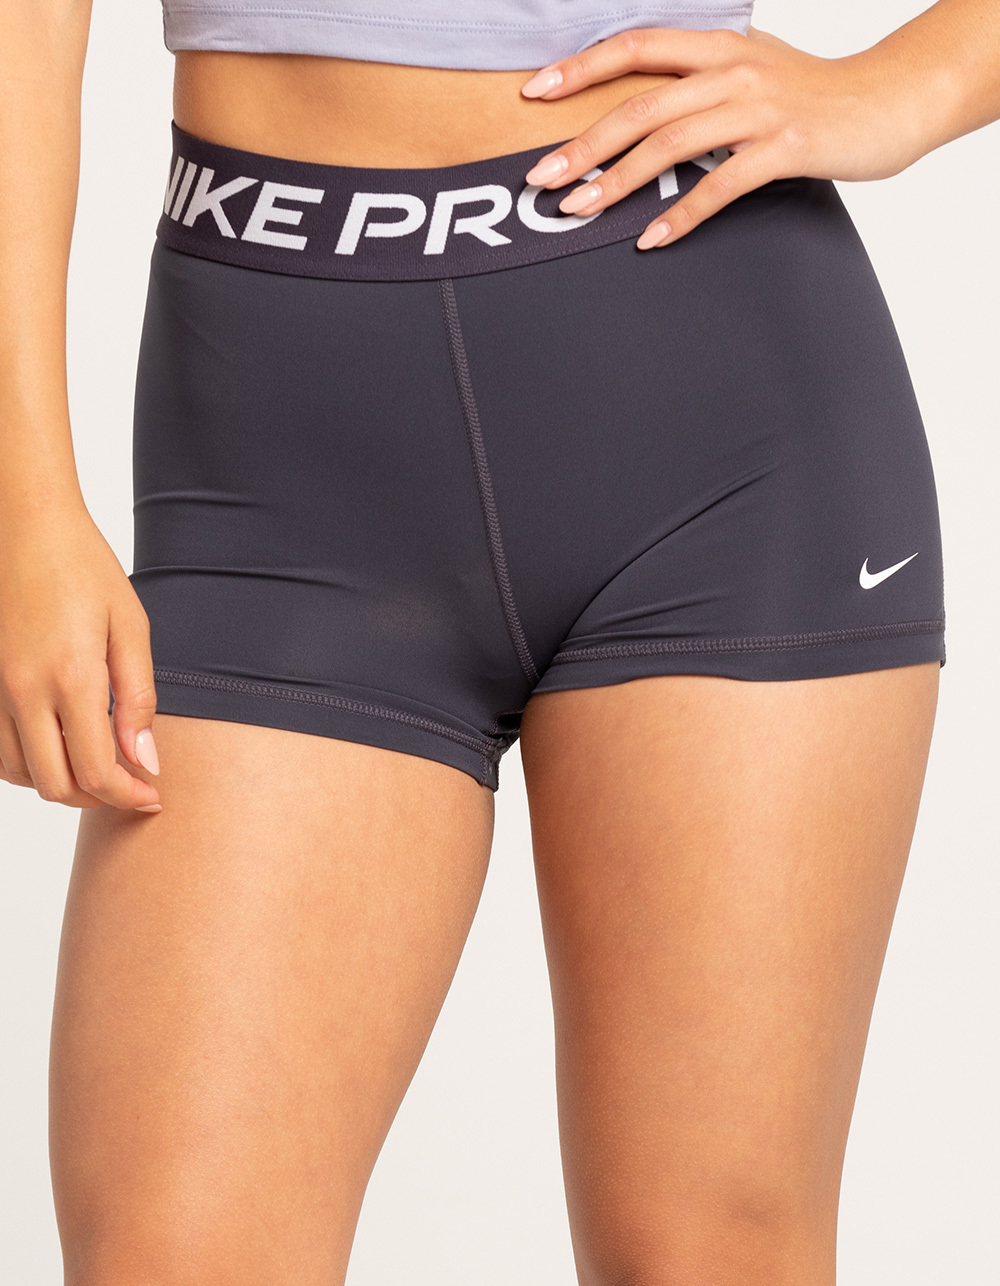 Nike Pro Combat Men's 6" Compression Shorts Underwear (Small